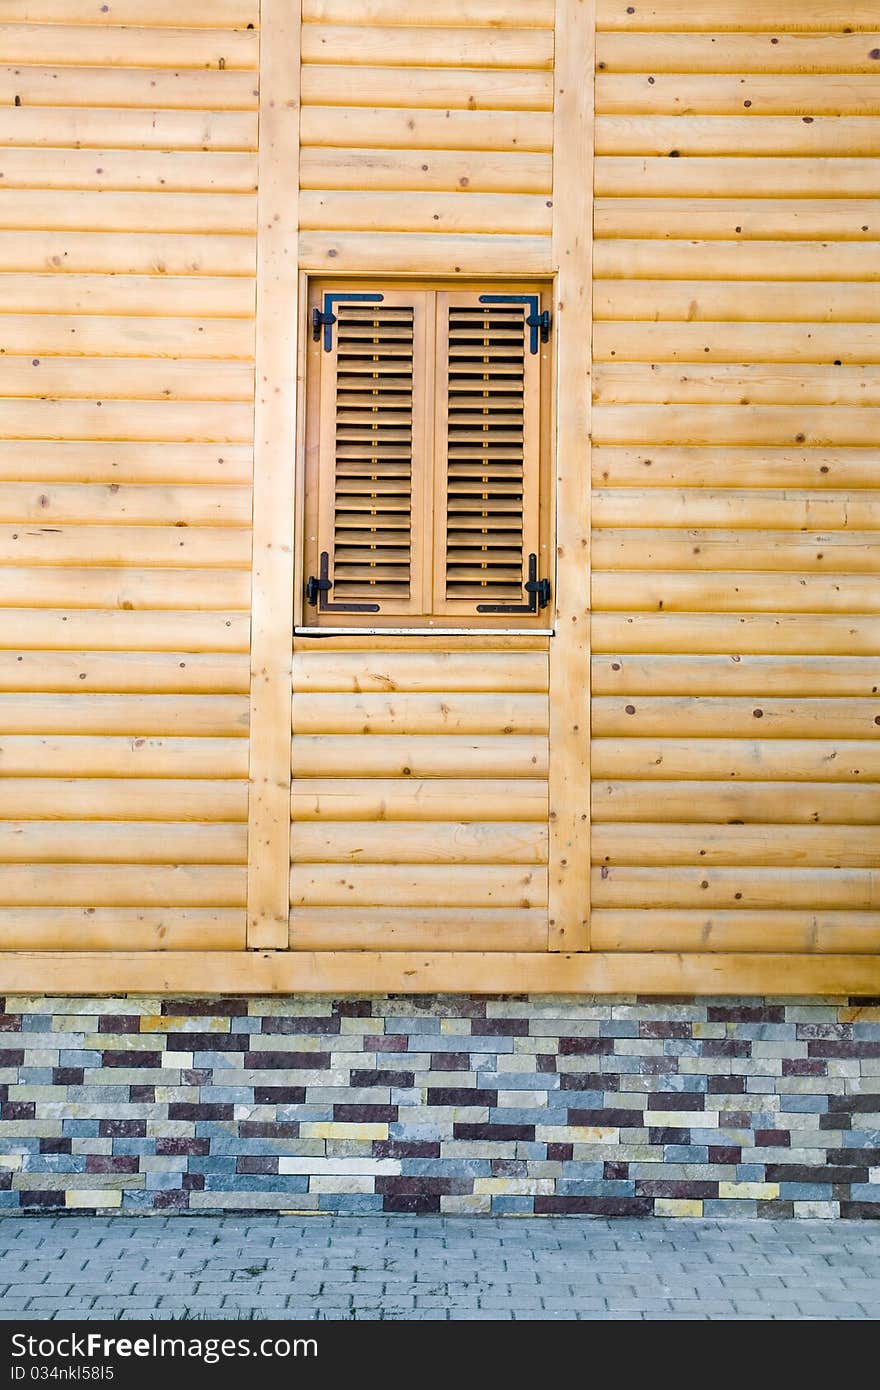 Facade of a new wooden house. Facade of a new wooden house.